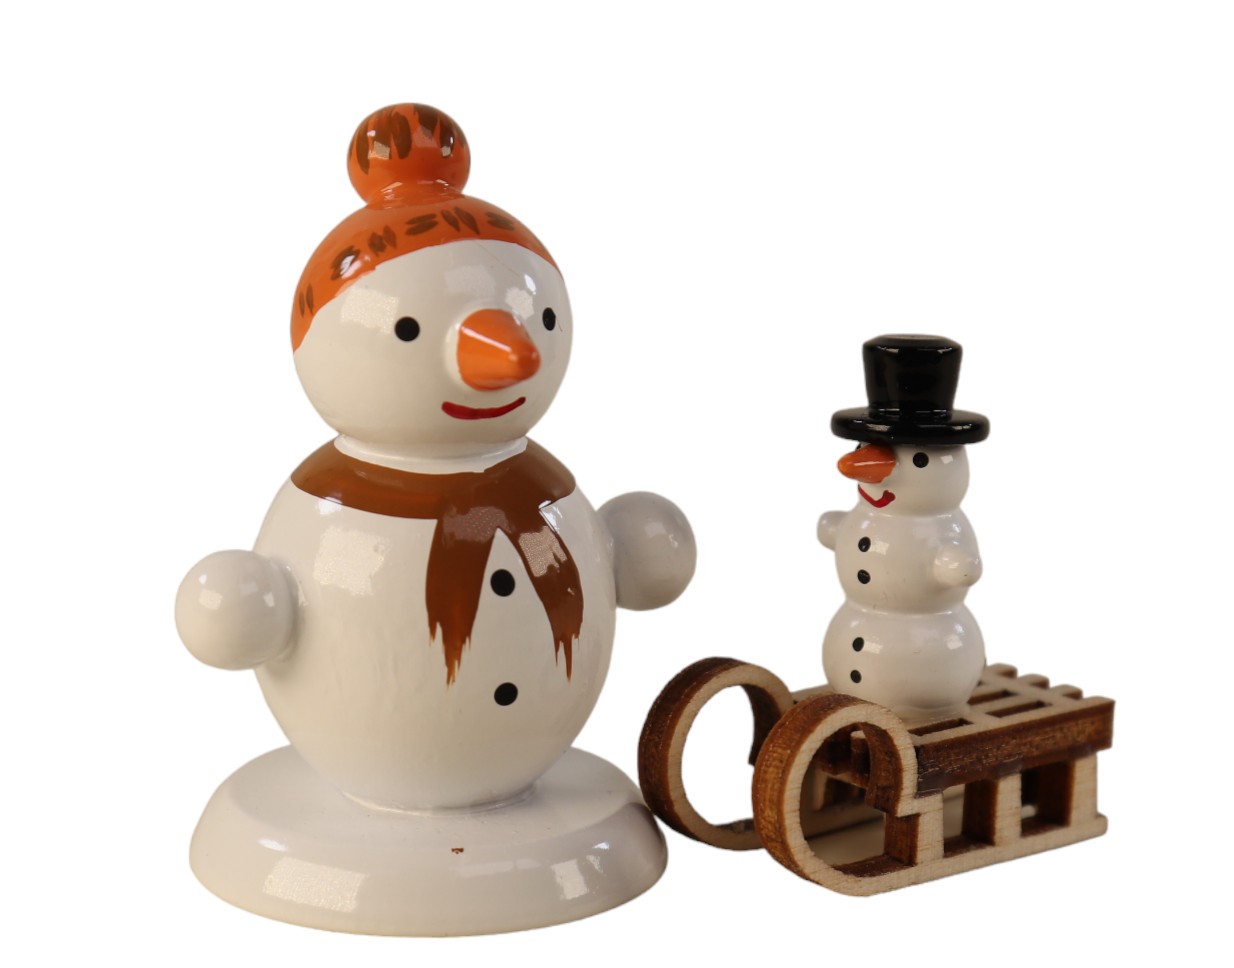 Schneemannfigur stehend Schlitten mit Kind, orange Mütze